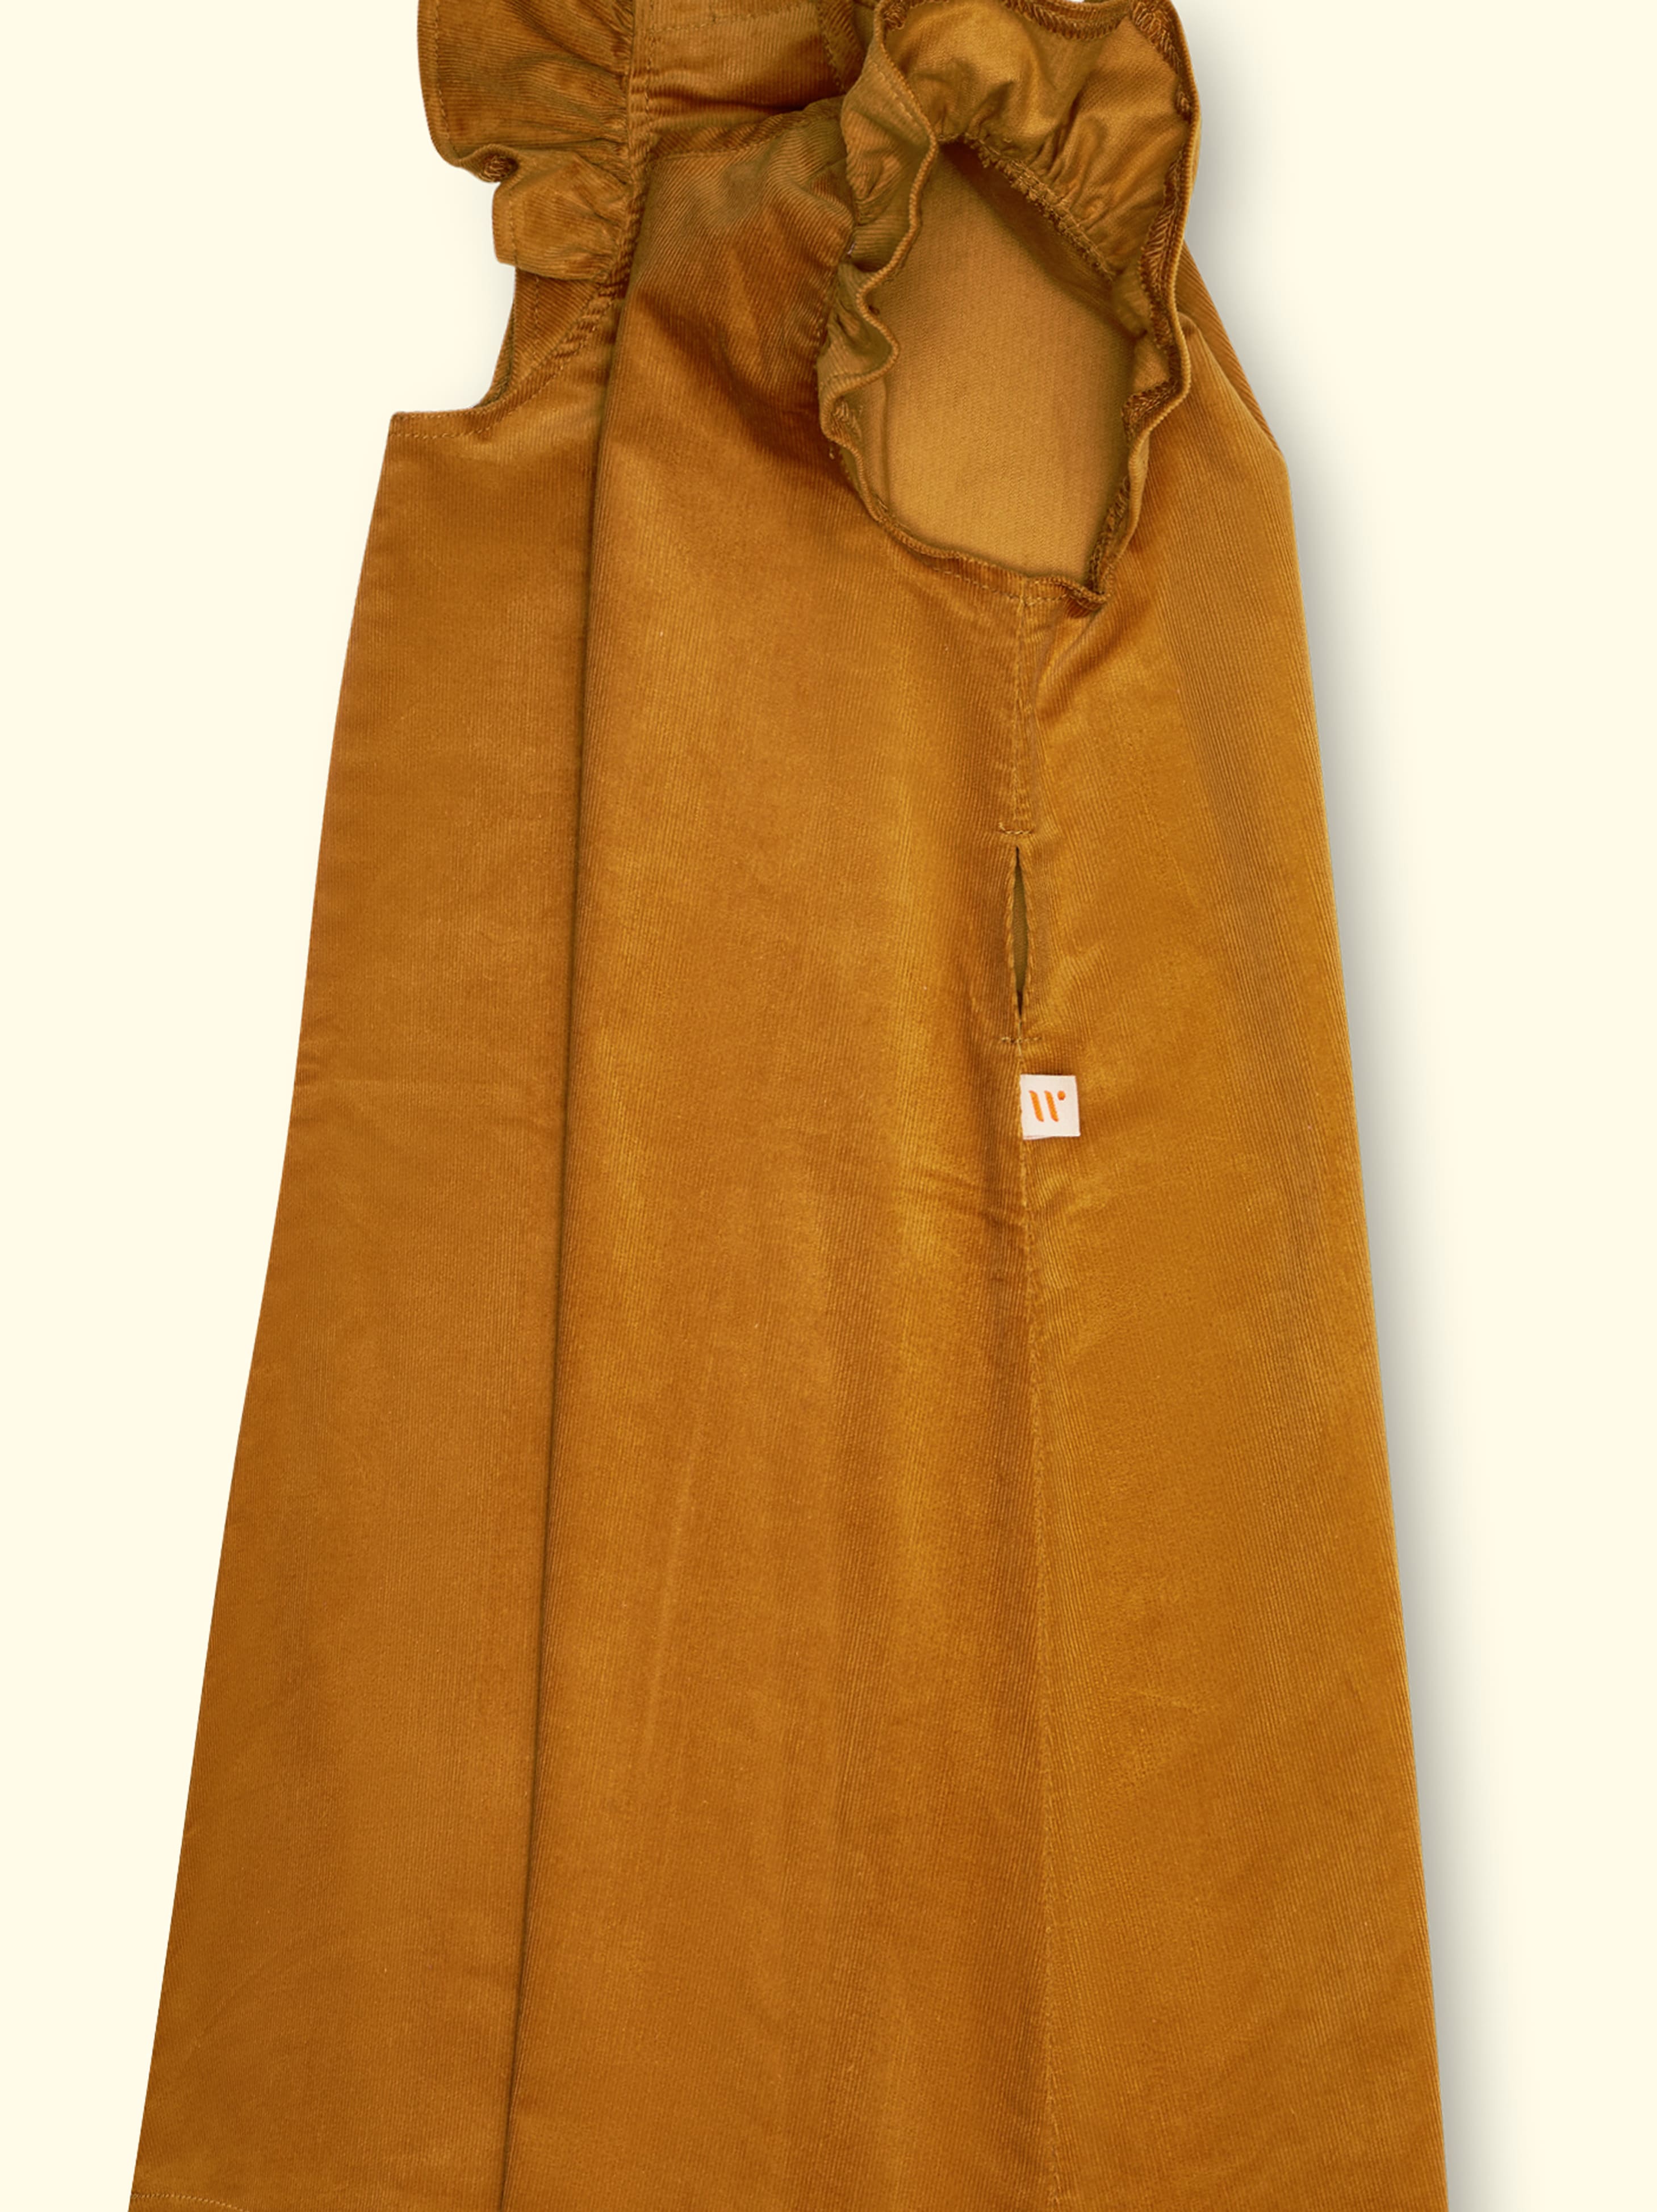 Vestido adaptable de pana Coco, con aberturas en los hombros, hasta la talla. 140